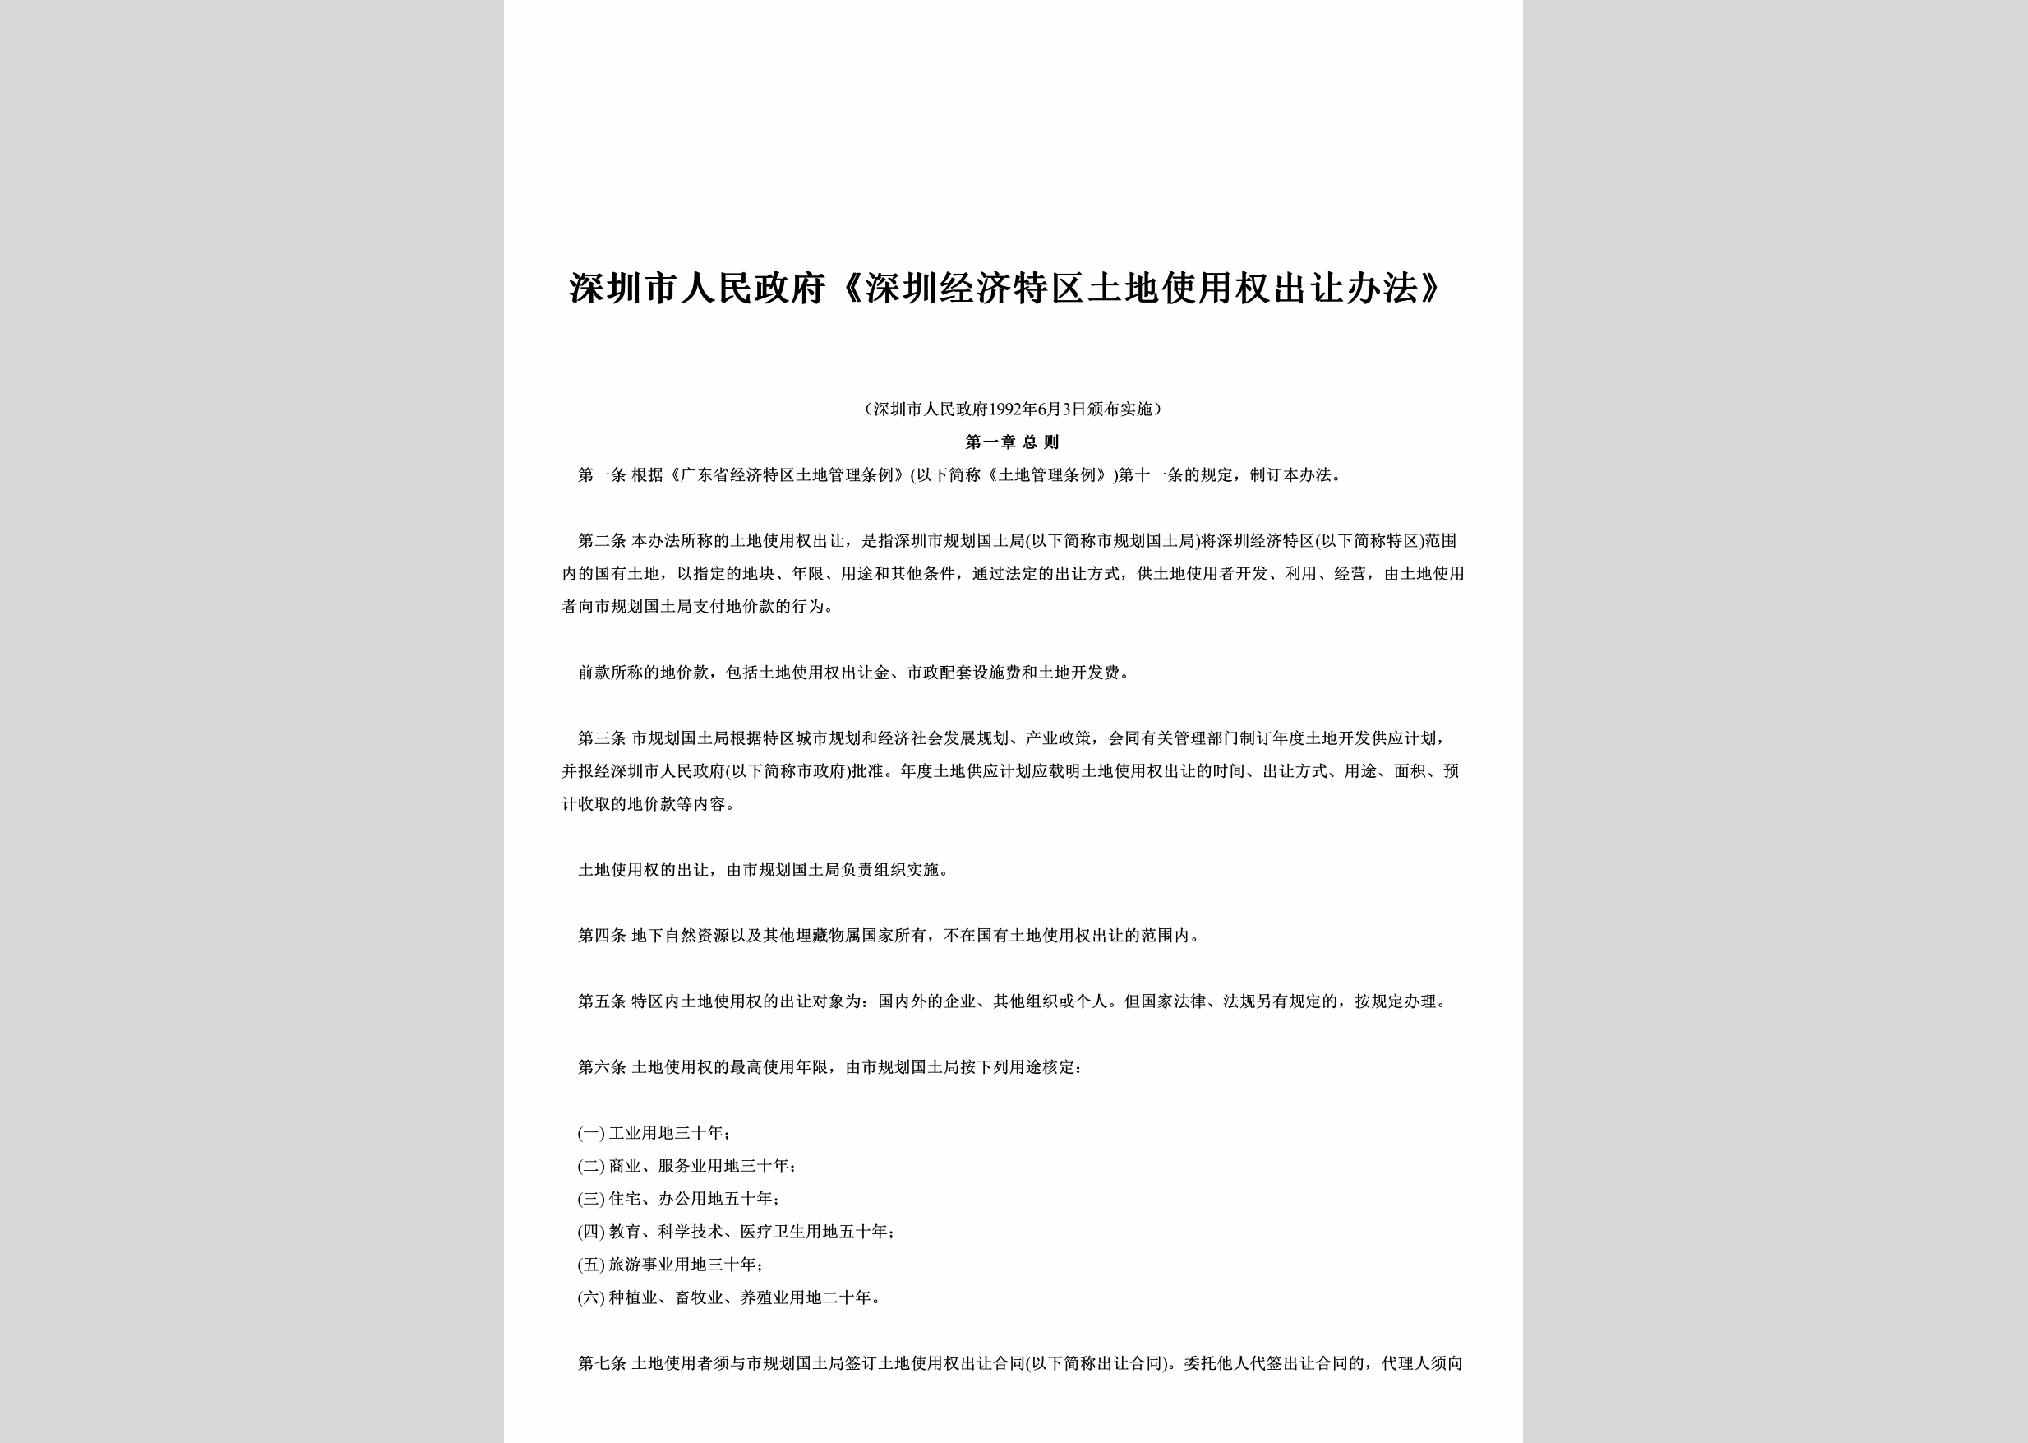 GD-SZTDSYBF-1992：《深圳经济特区土地使用权出让办法》